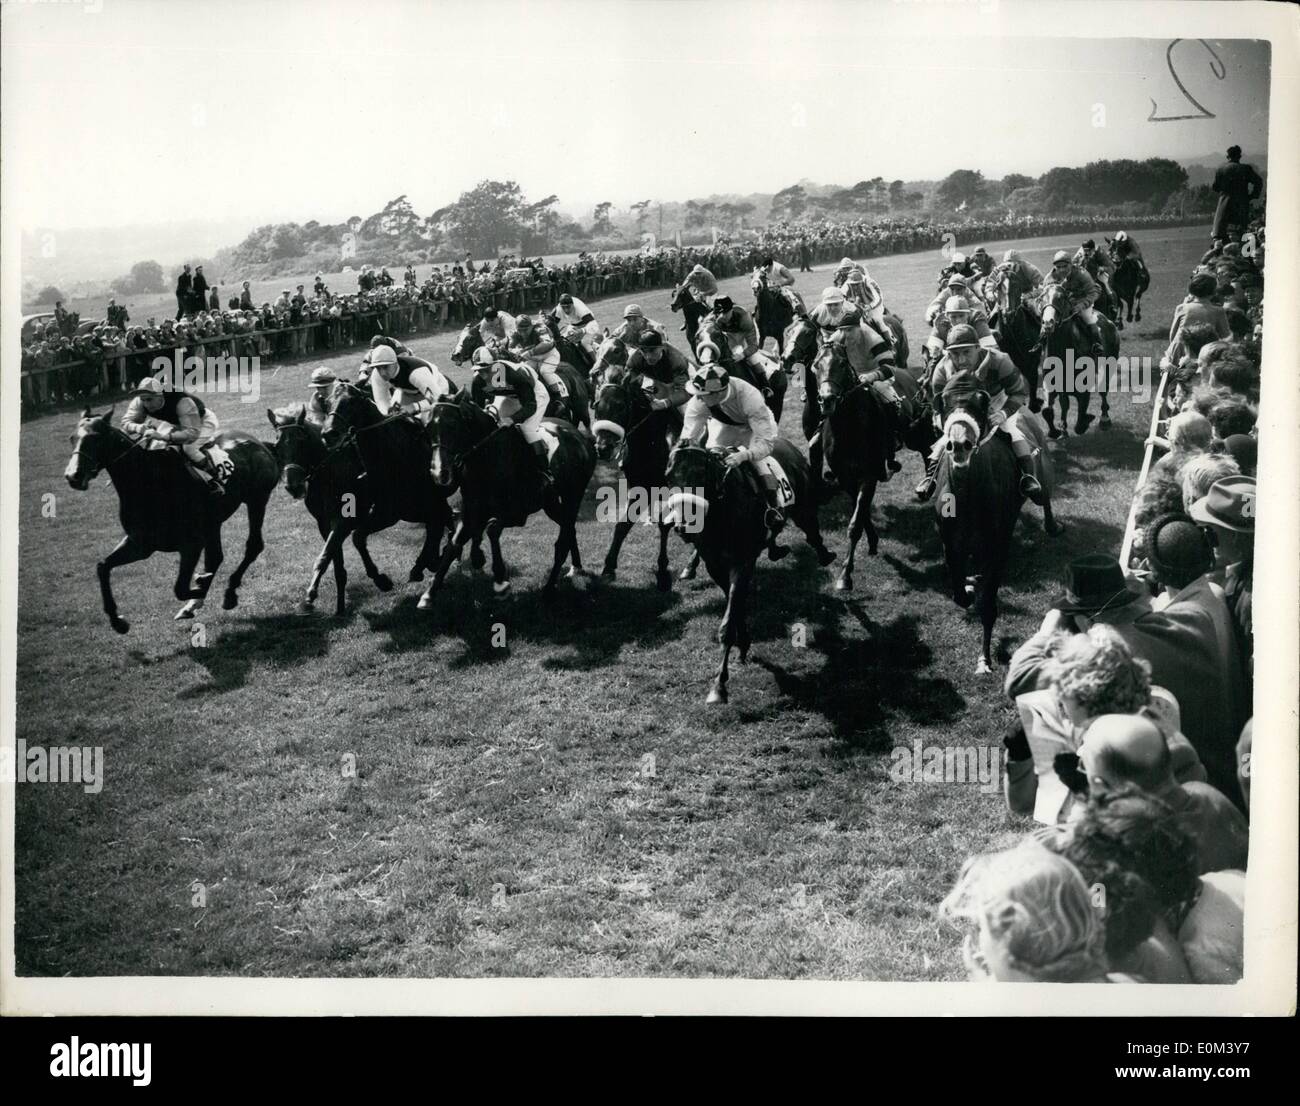 Giugno 06, 1953 - Gordon Richards vince il suo primo Derby regina del cavallo della seconda: Gordon Richards, il campione del fantino, oggi ha vinto il suo primo Derby, su Sir V. Sassoon's ''Pinza". con la regina del cavallo della ''aureola'' secondo e ''Cavallo rosa'' terzo. La foto mostra: il Derby campo visto presso il miglio Post oggi nel corso del grande gara. Foto Stock